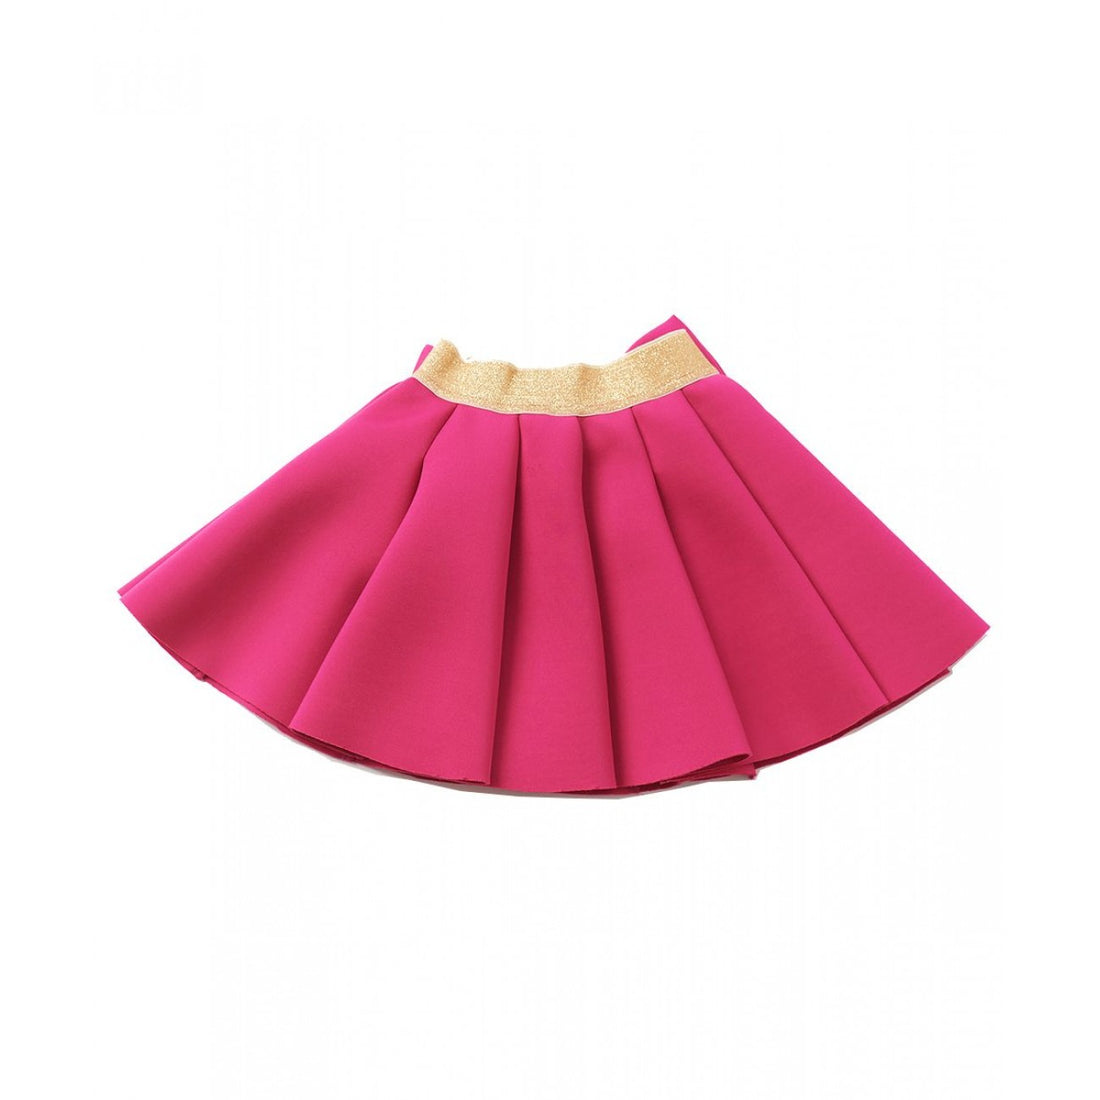 Bow Neo Skirt